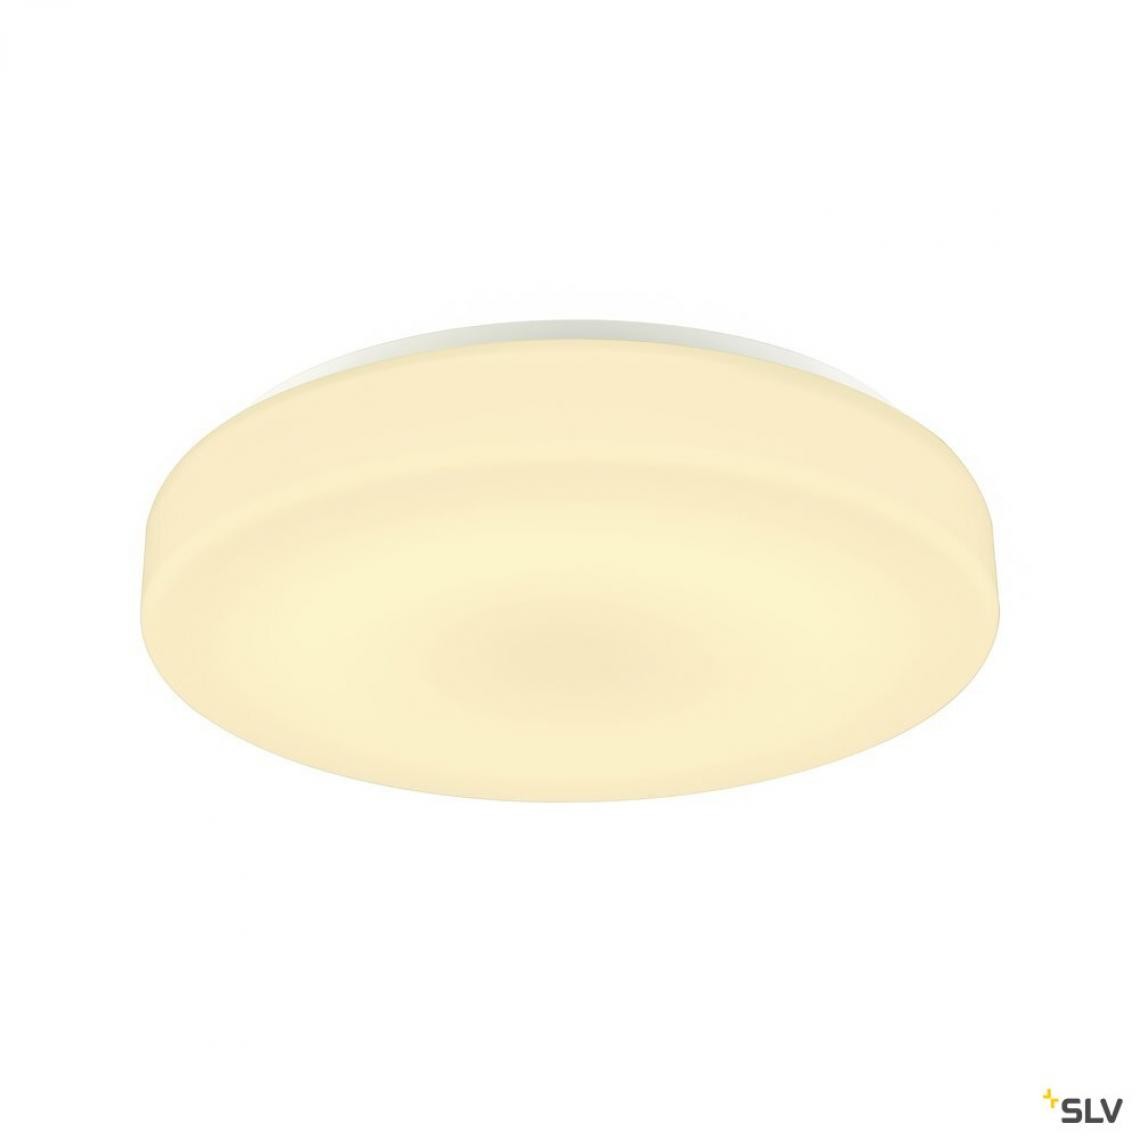 Slv - Applique et plafonnier intérieur rond LIPSY® 50, Drum, blanc, LED - Ø 40 cm - Applique, hublot